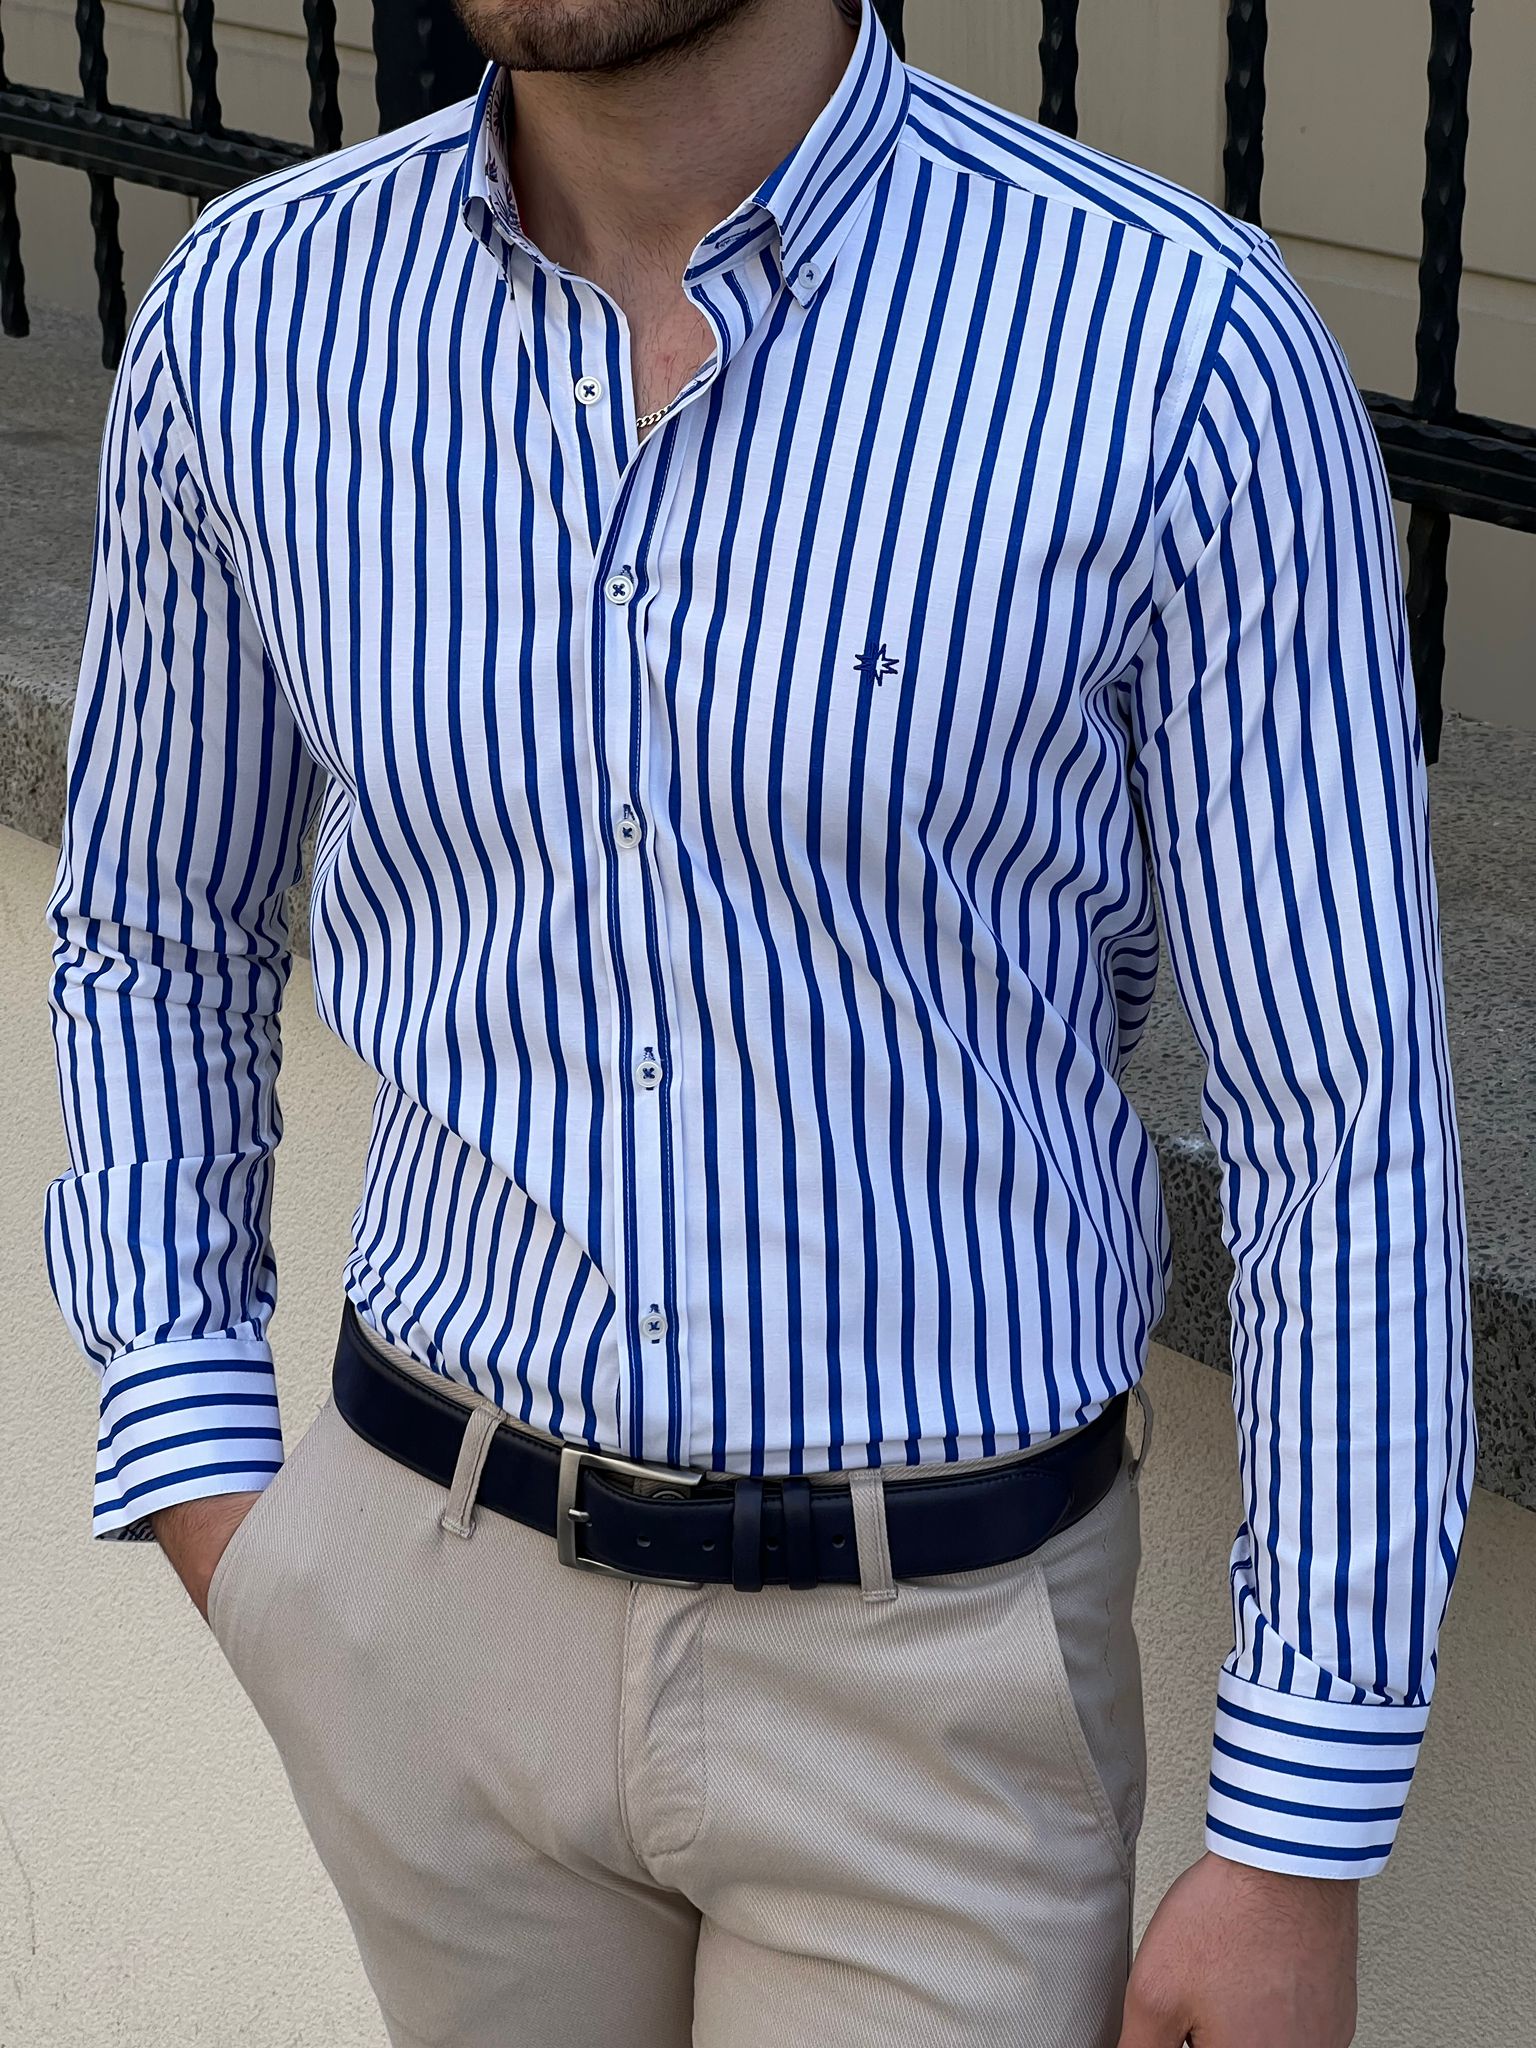 Bojoni Montebello Slim Fit High Quality Striped White & Sax Shirt